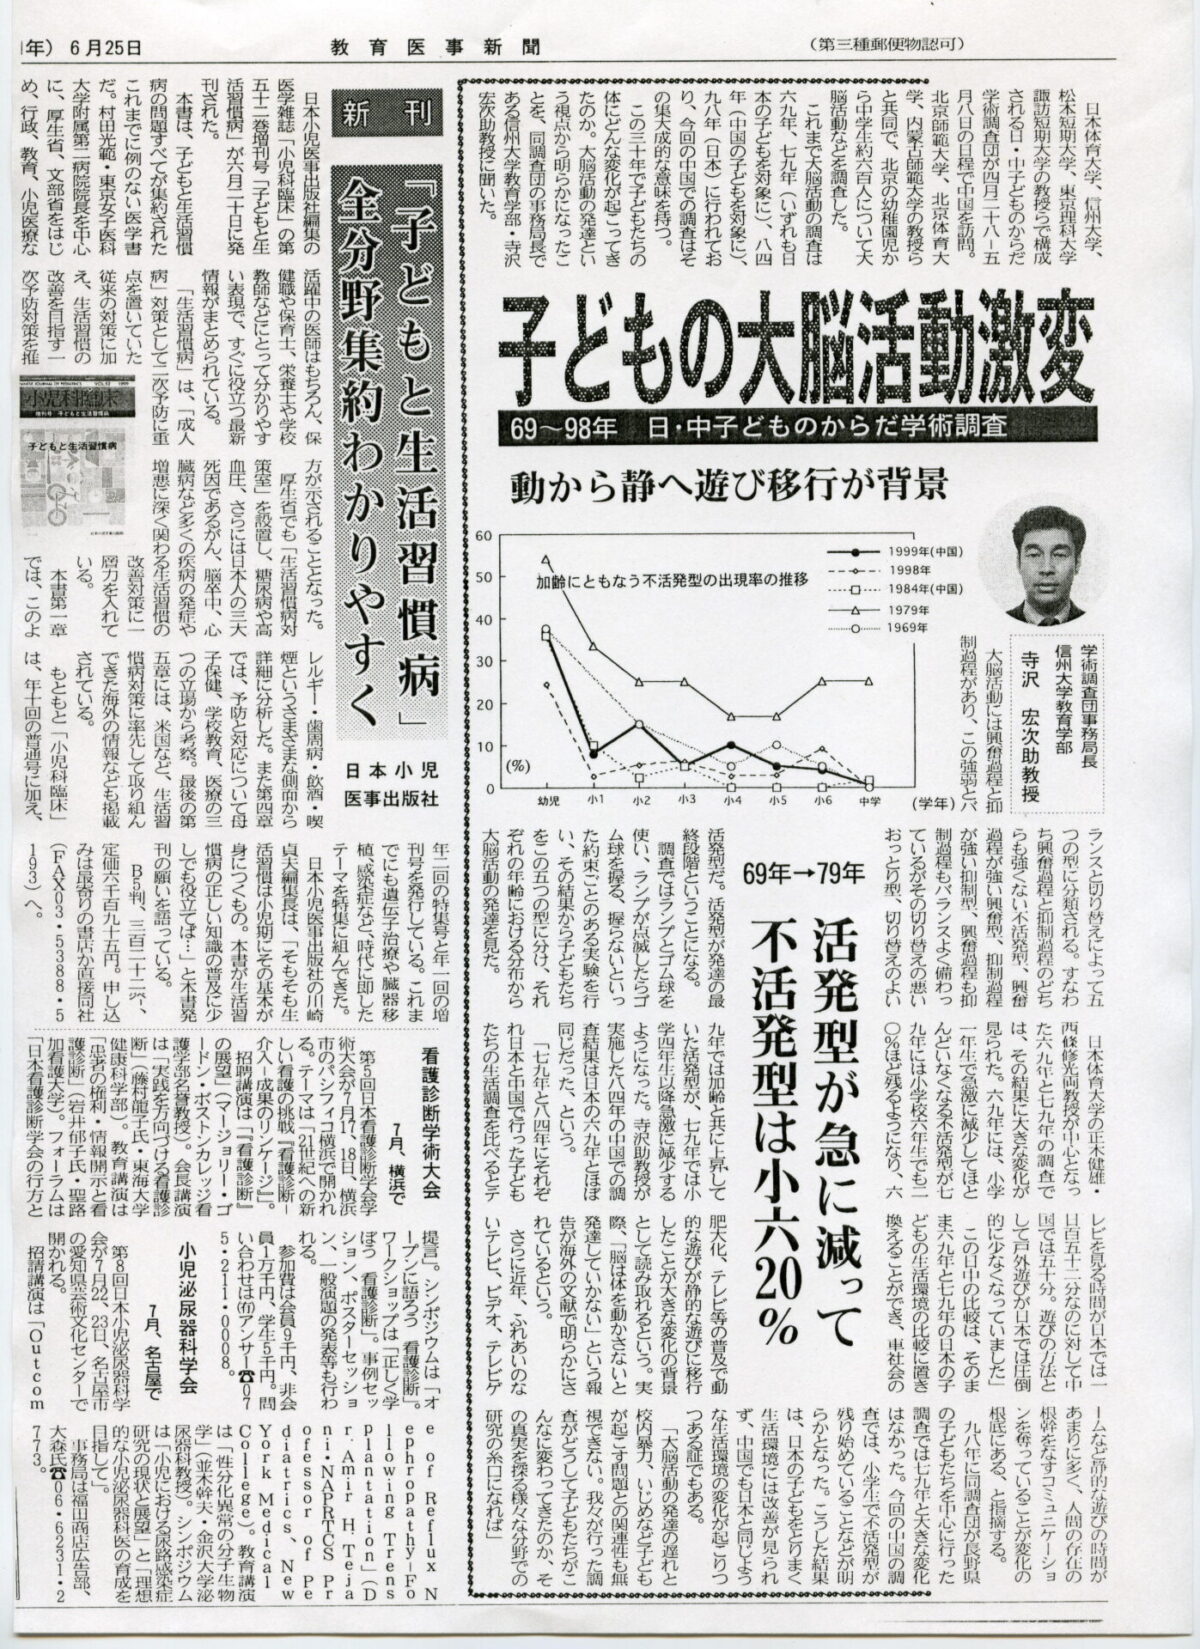 1999-06-25教育医事新聞